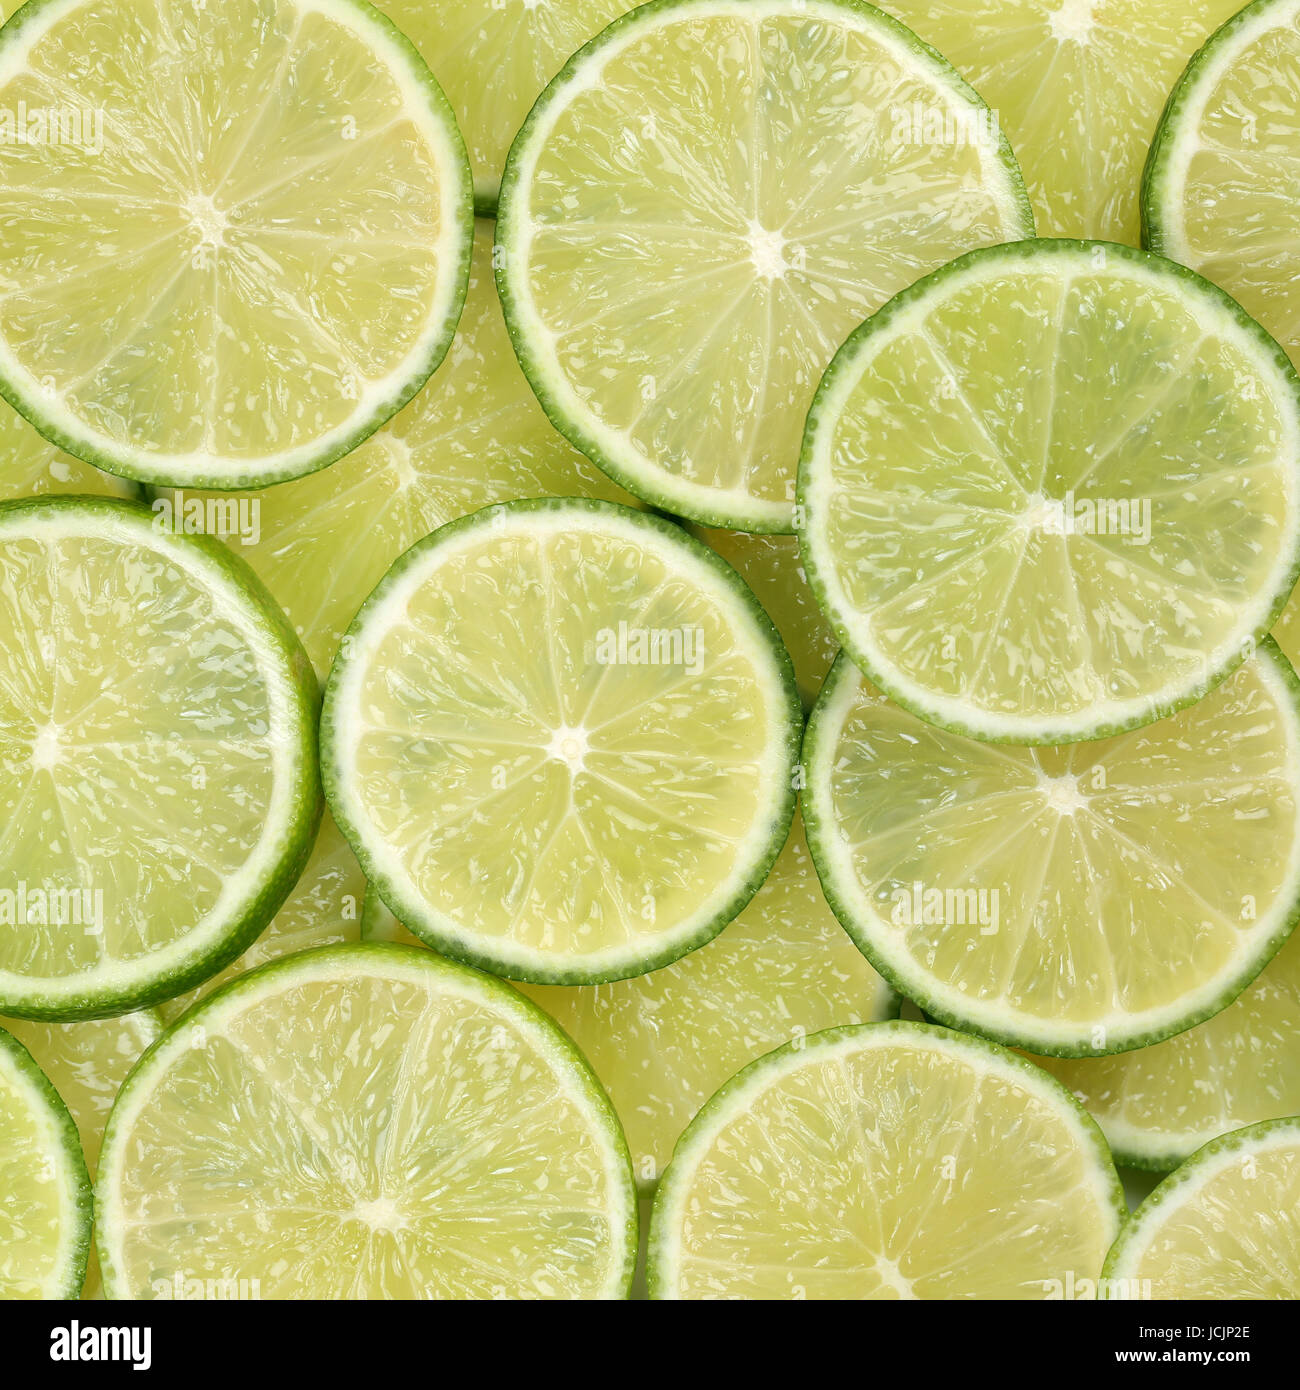 Hintergrund aus geschnittenen Limetten oder Limonen Früchten Foto Stock